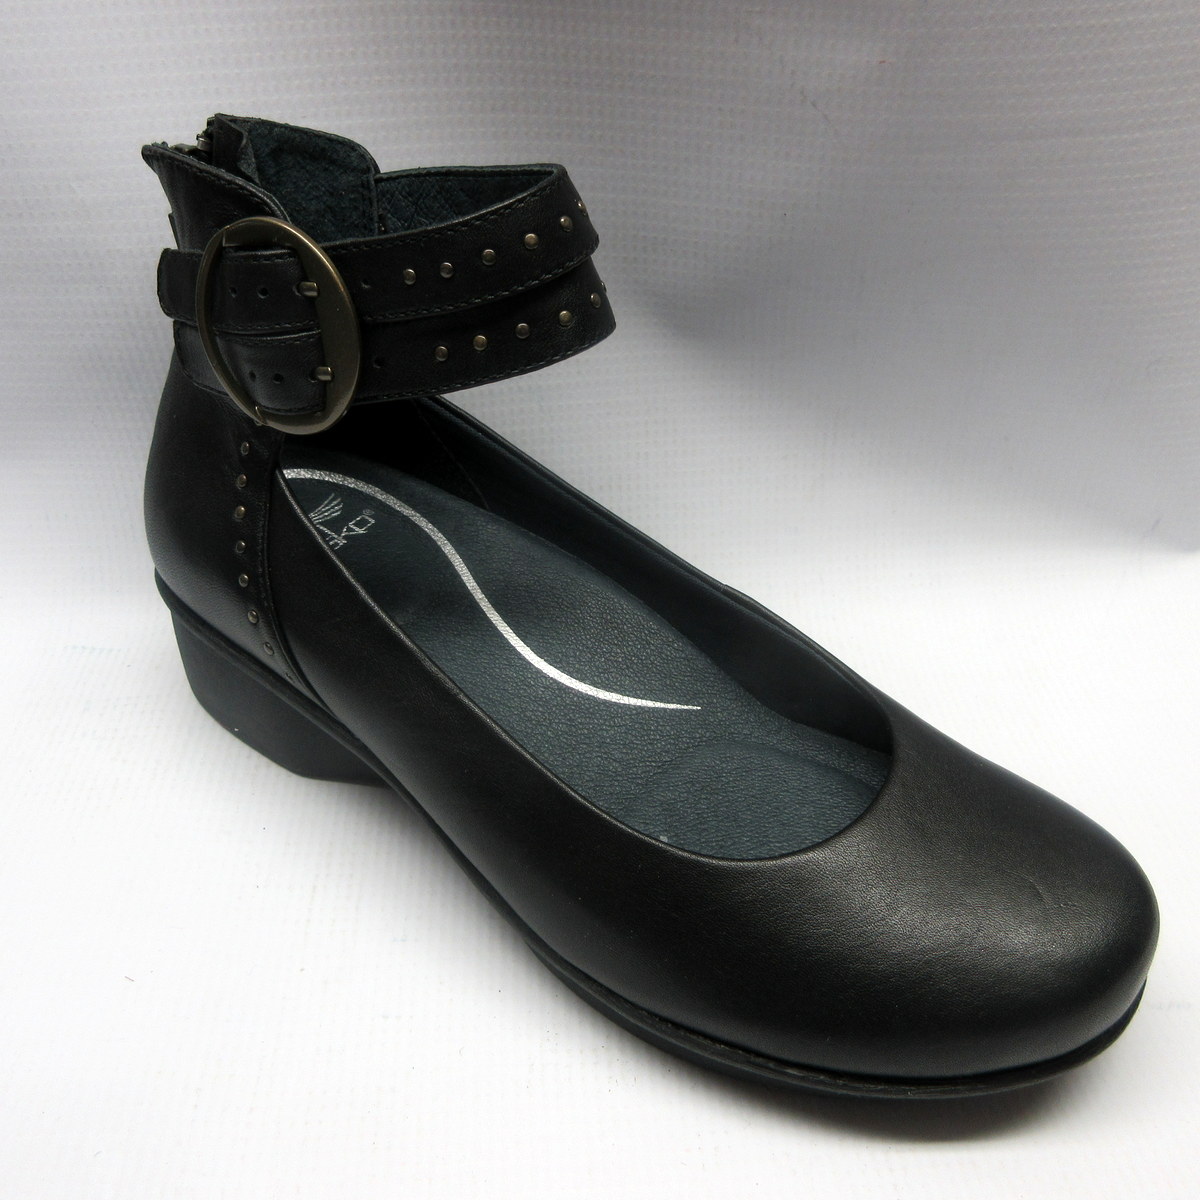 dansko shoes size 38